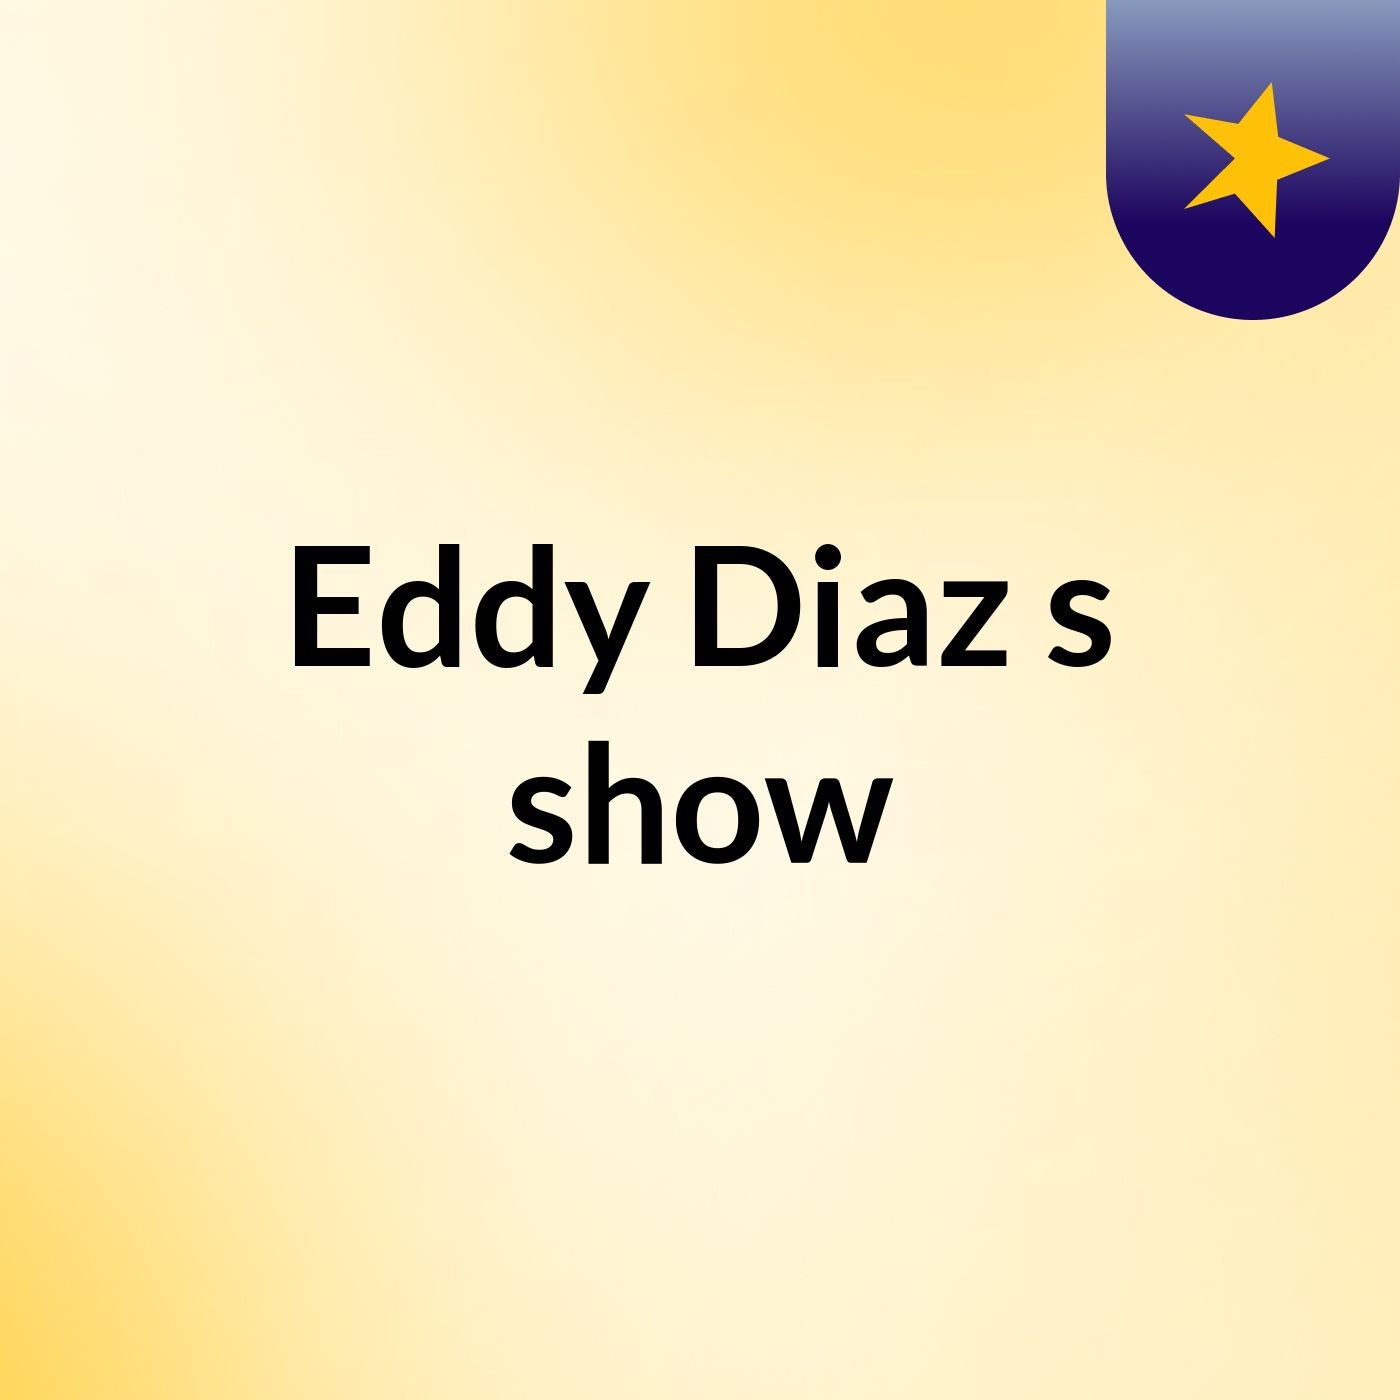 Eddy Diaz's show